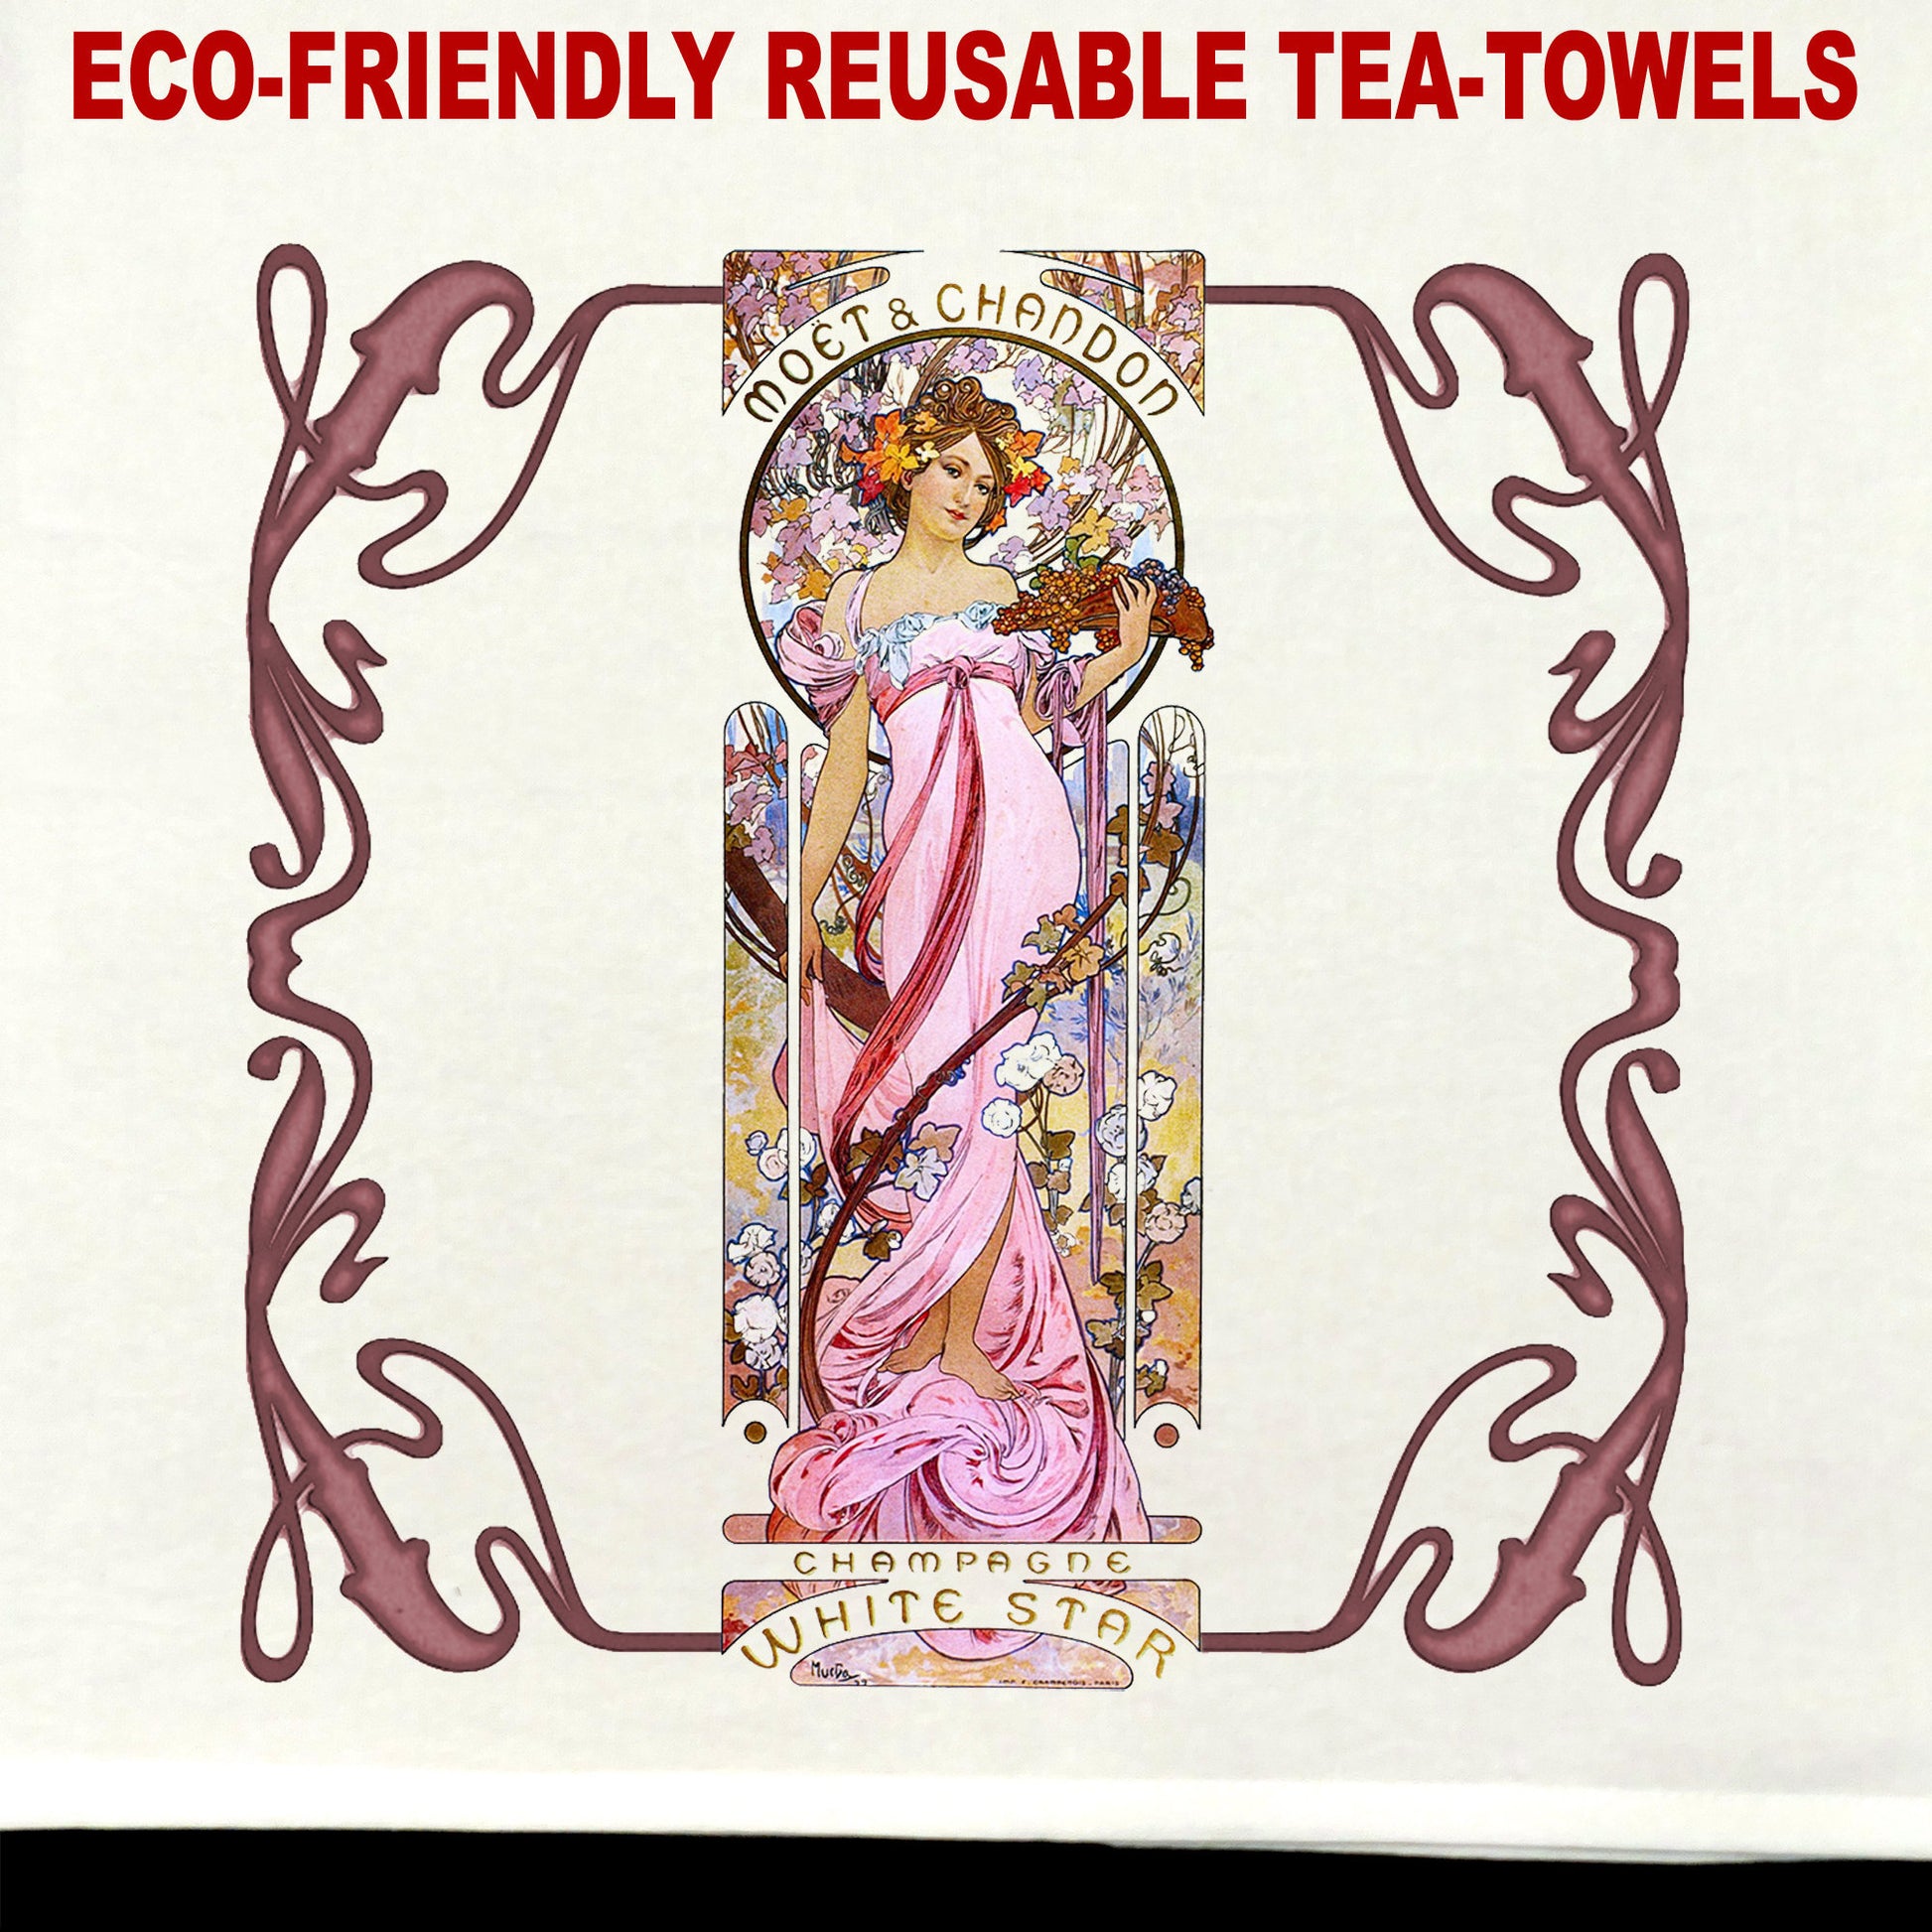 Mucha Moet #1 Tea Towel / tea towel / dish towel / hand towel / reusable wipe / kitchen gift / kitchen deco